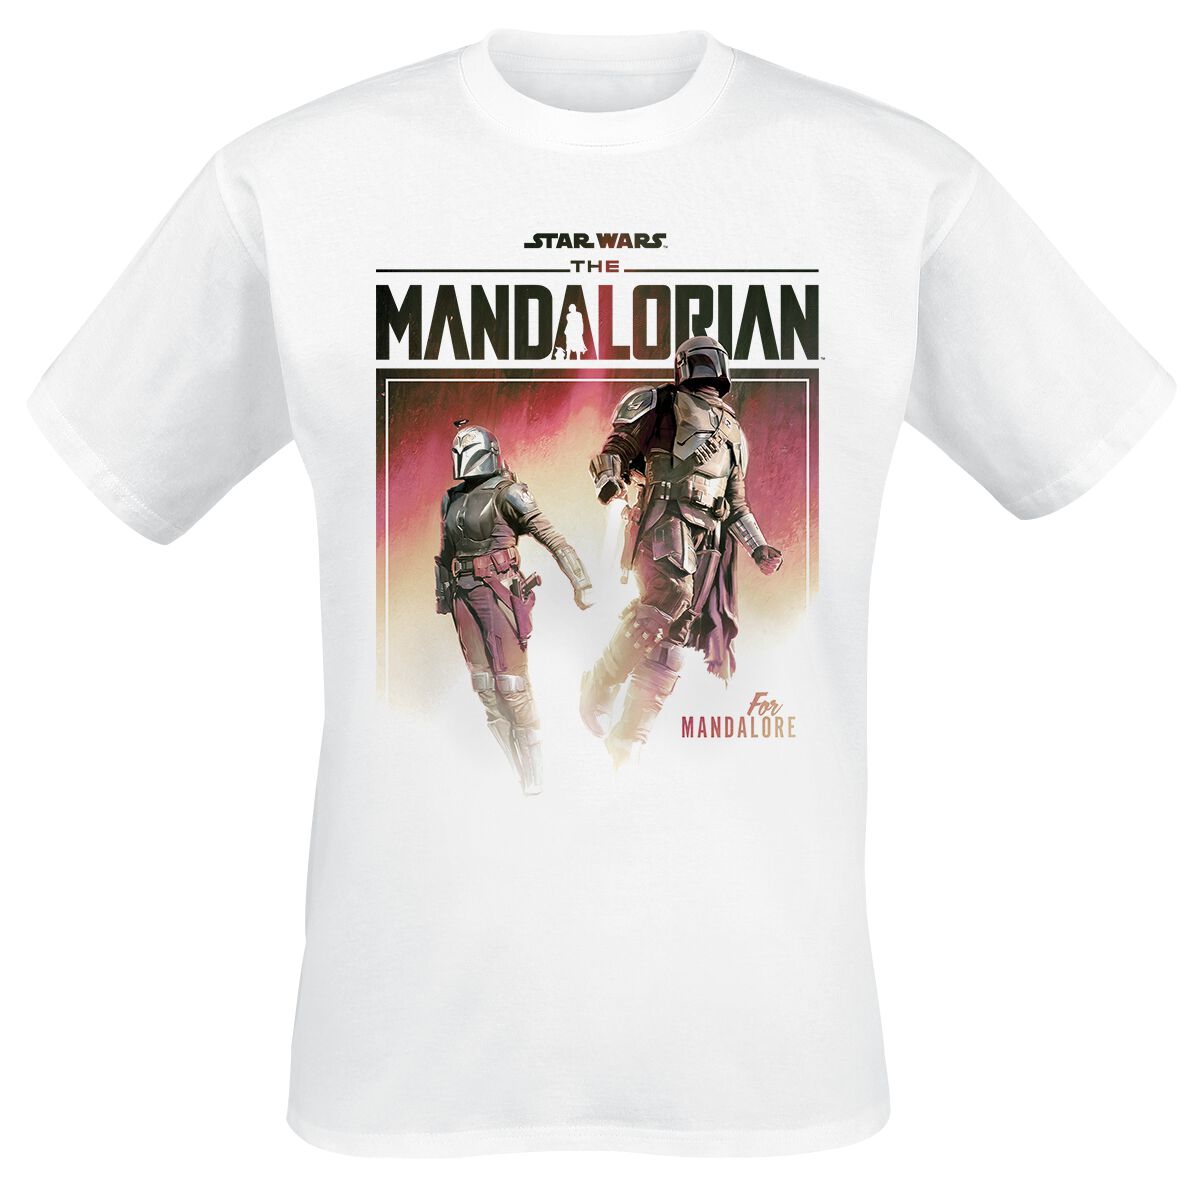 Star Wars T-Shirt - The Mandalorian - Season 3 - For Mandalore - S bis XL - für Männer - Größe XL - weiß  - EMP exklusives Merchandise!